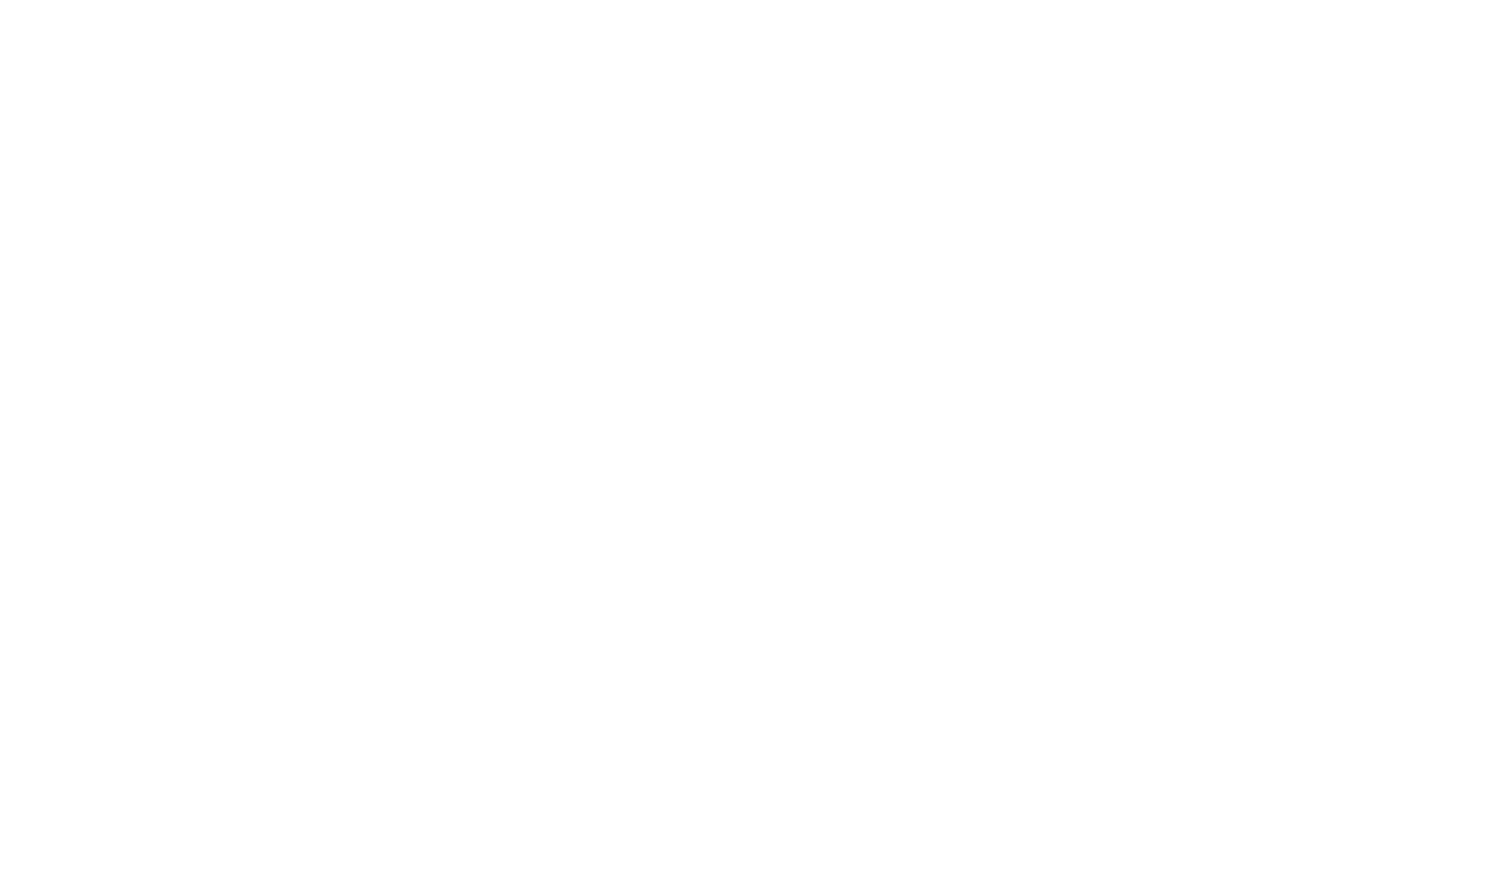 Gettysburg Rocks